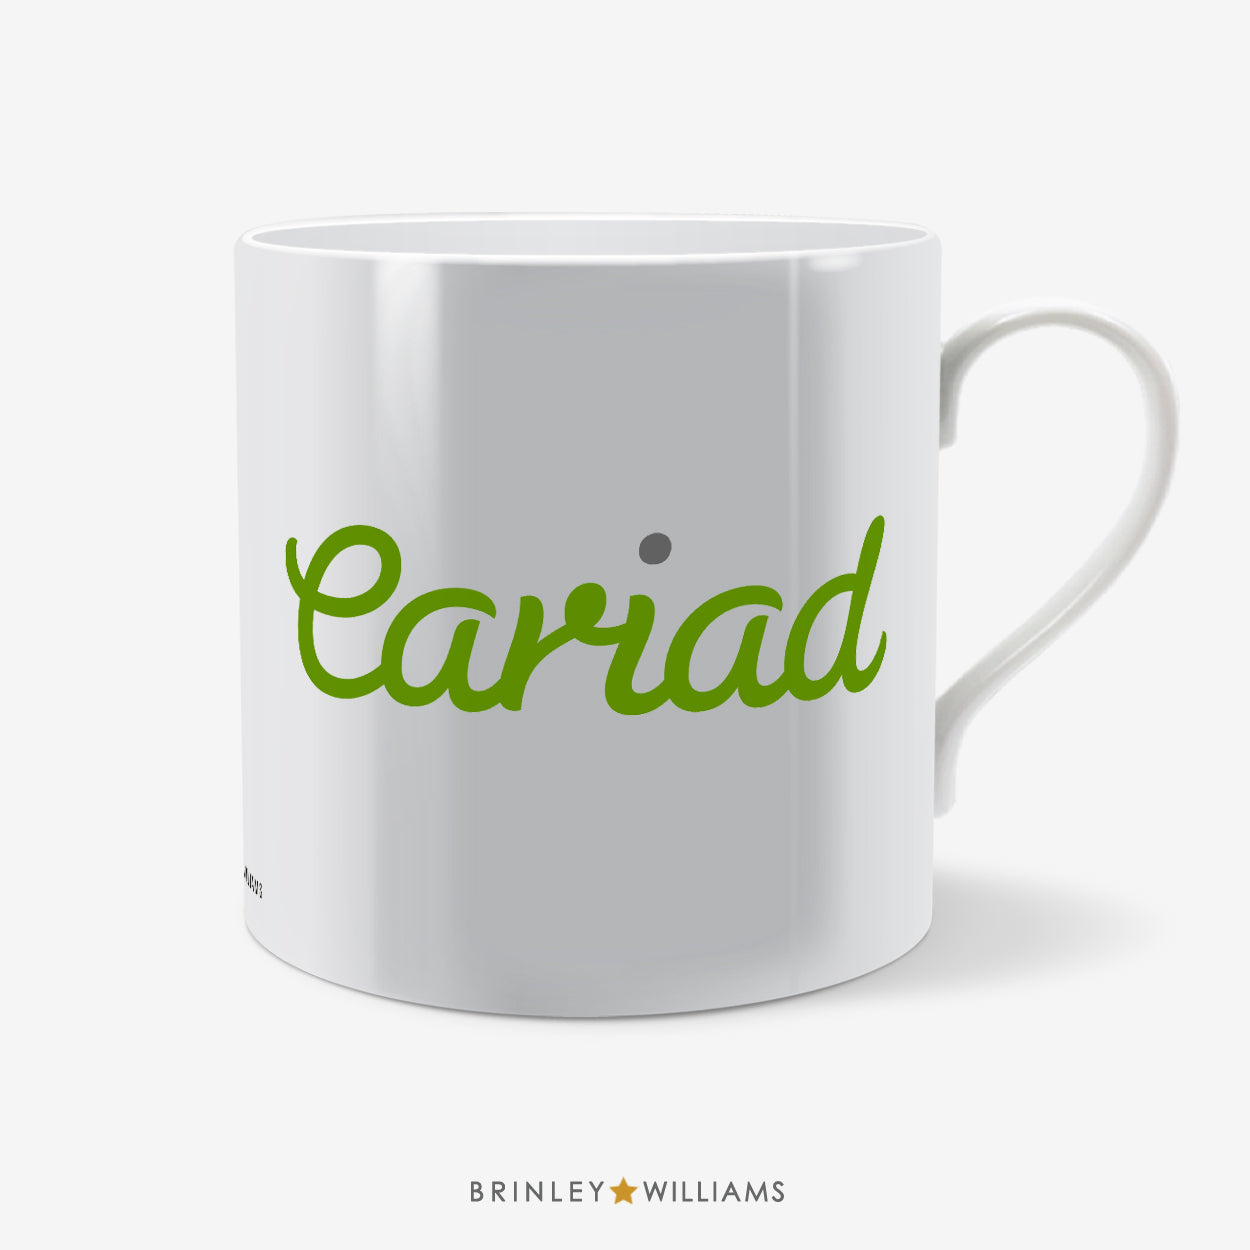 Cariad Welsh Mug - Green